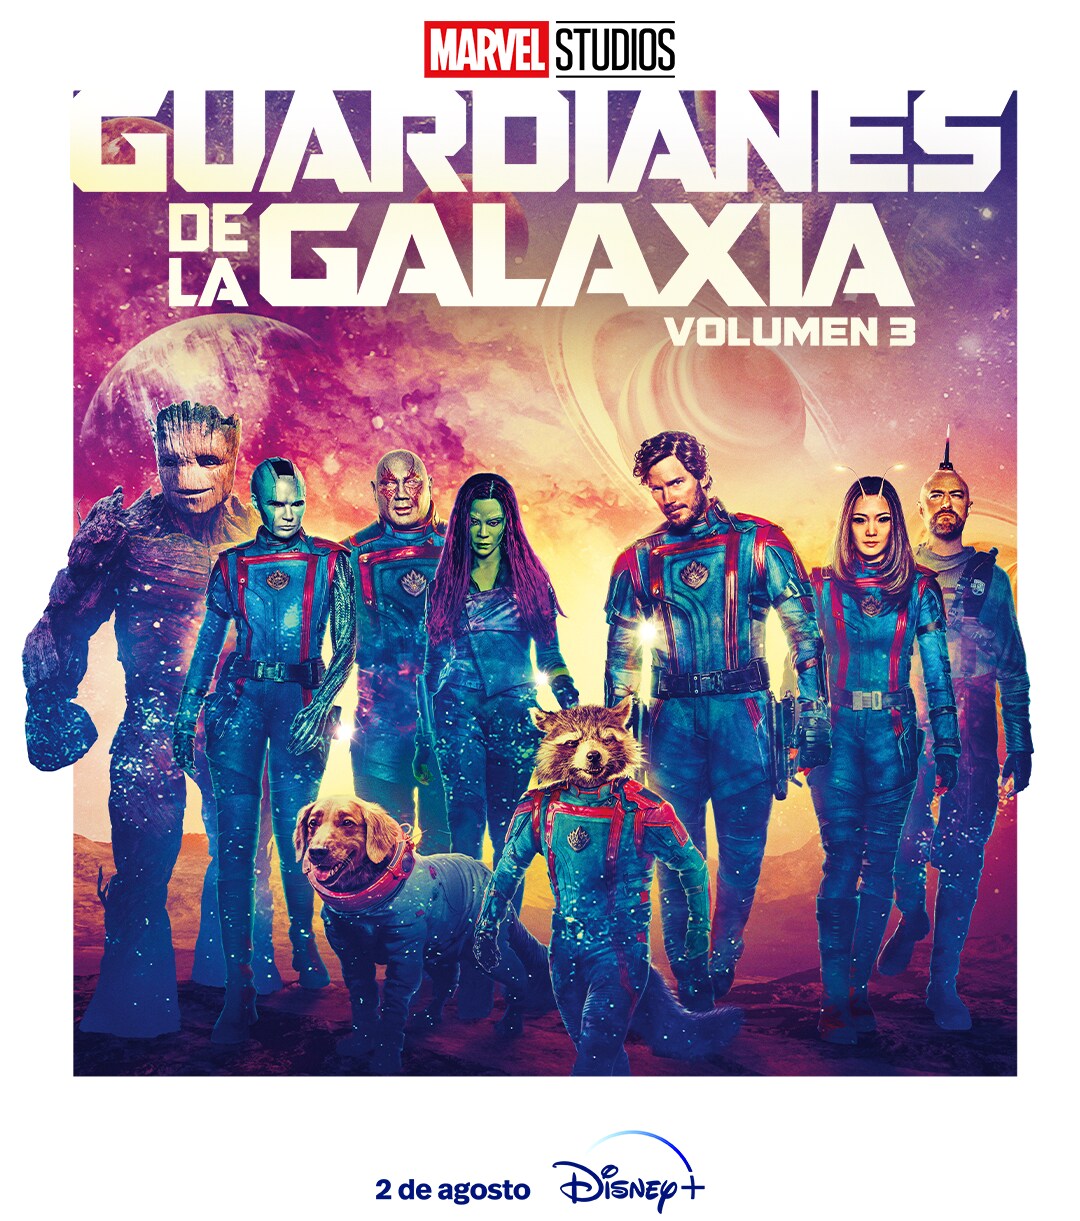 Marvel Dato on X: 🎞  Estamos en la semana de estreno del último baile de  los Guardianes de la Galaxia. ¿Cuándo la ven? 🎬Miércoles preestreno  🎬Jueves estreno oficial #GuardiansOfTheGalaxyVol3   /